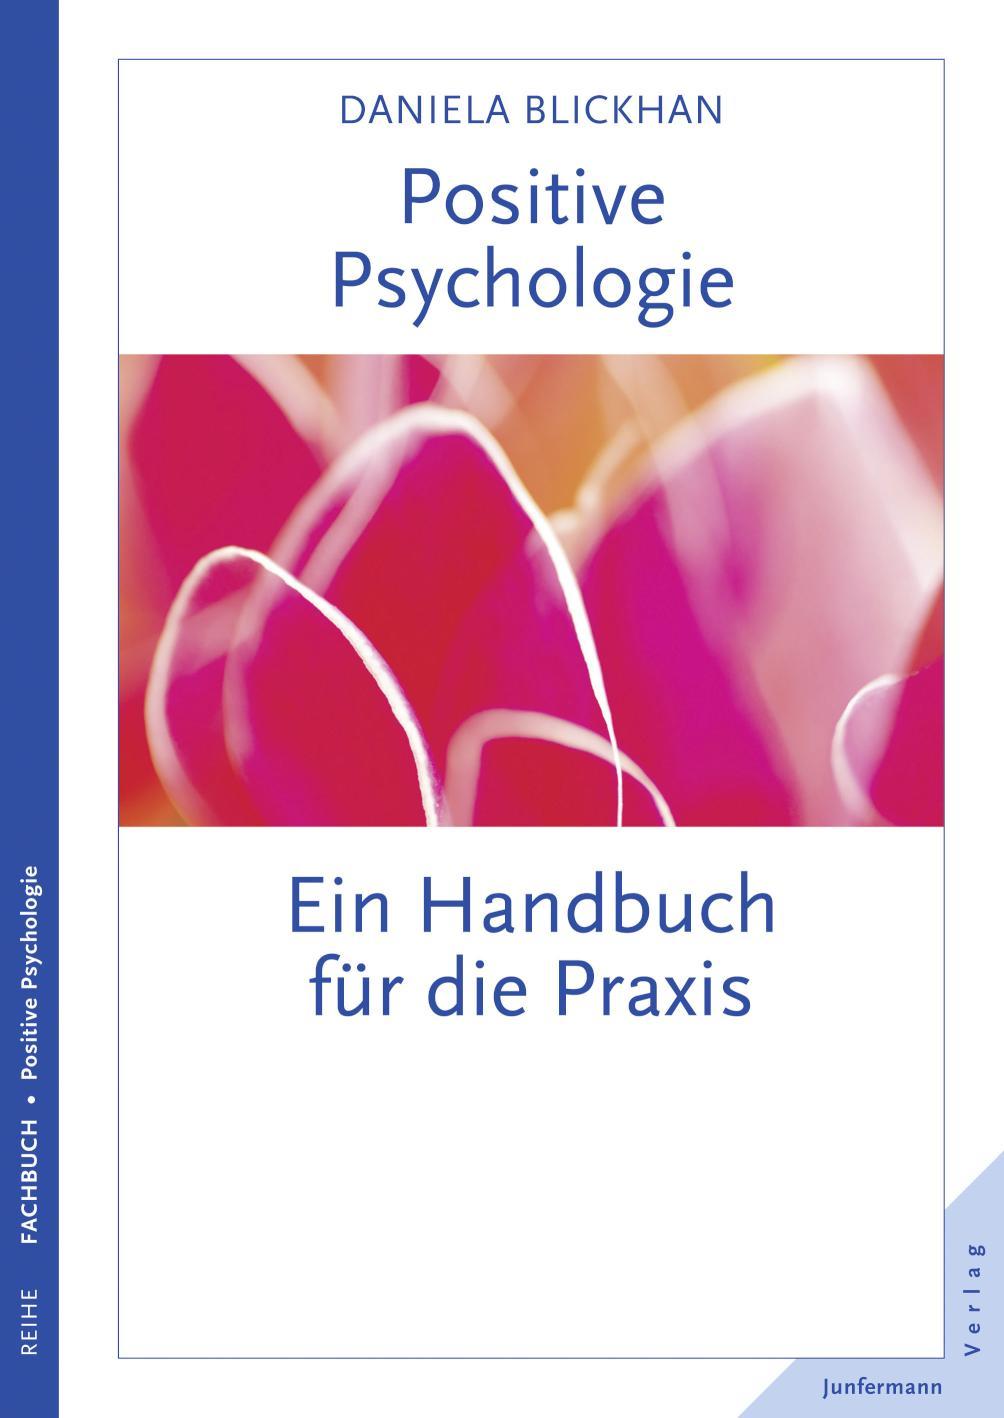 Positive Psychologie Ein Handbuch für die Praxis